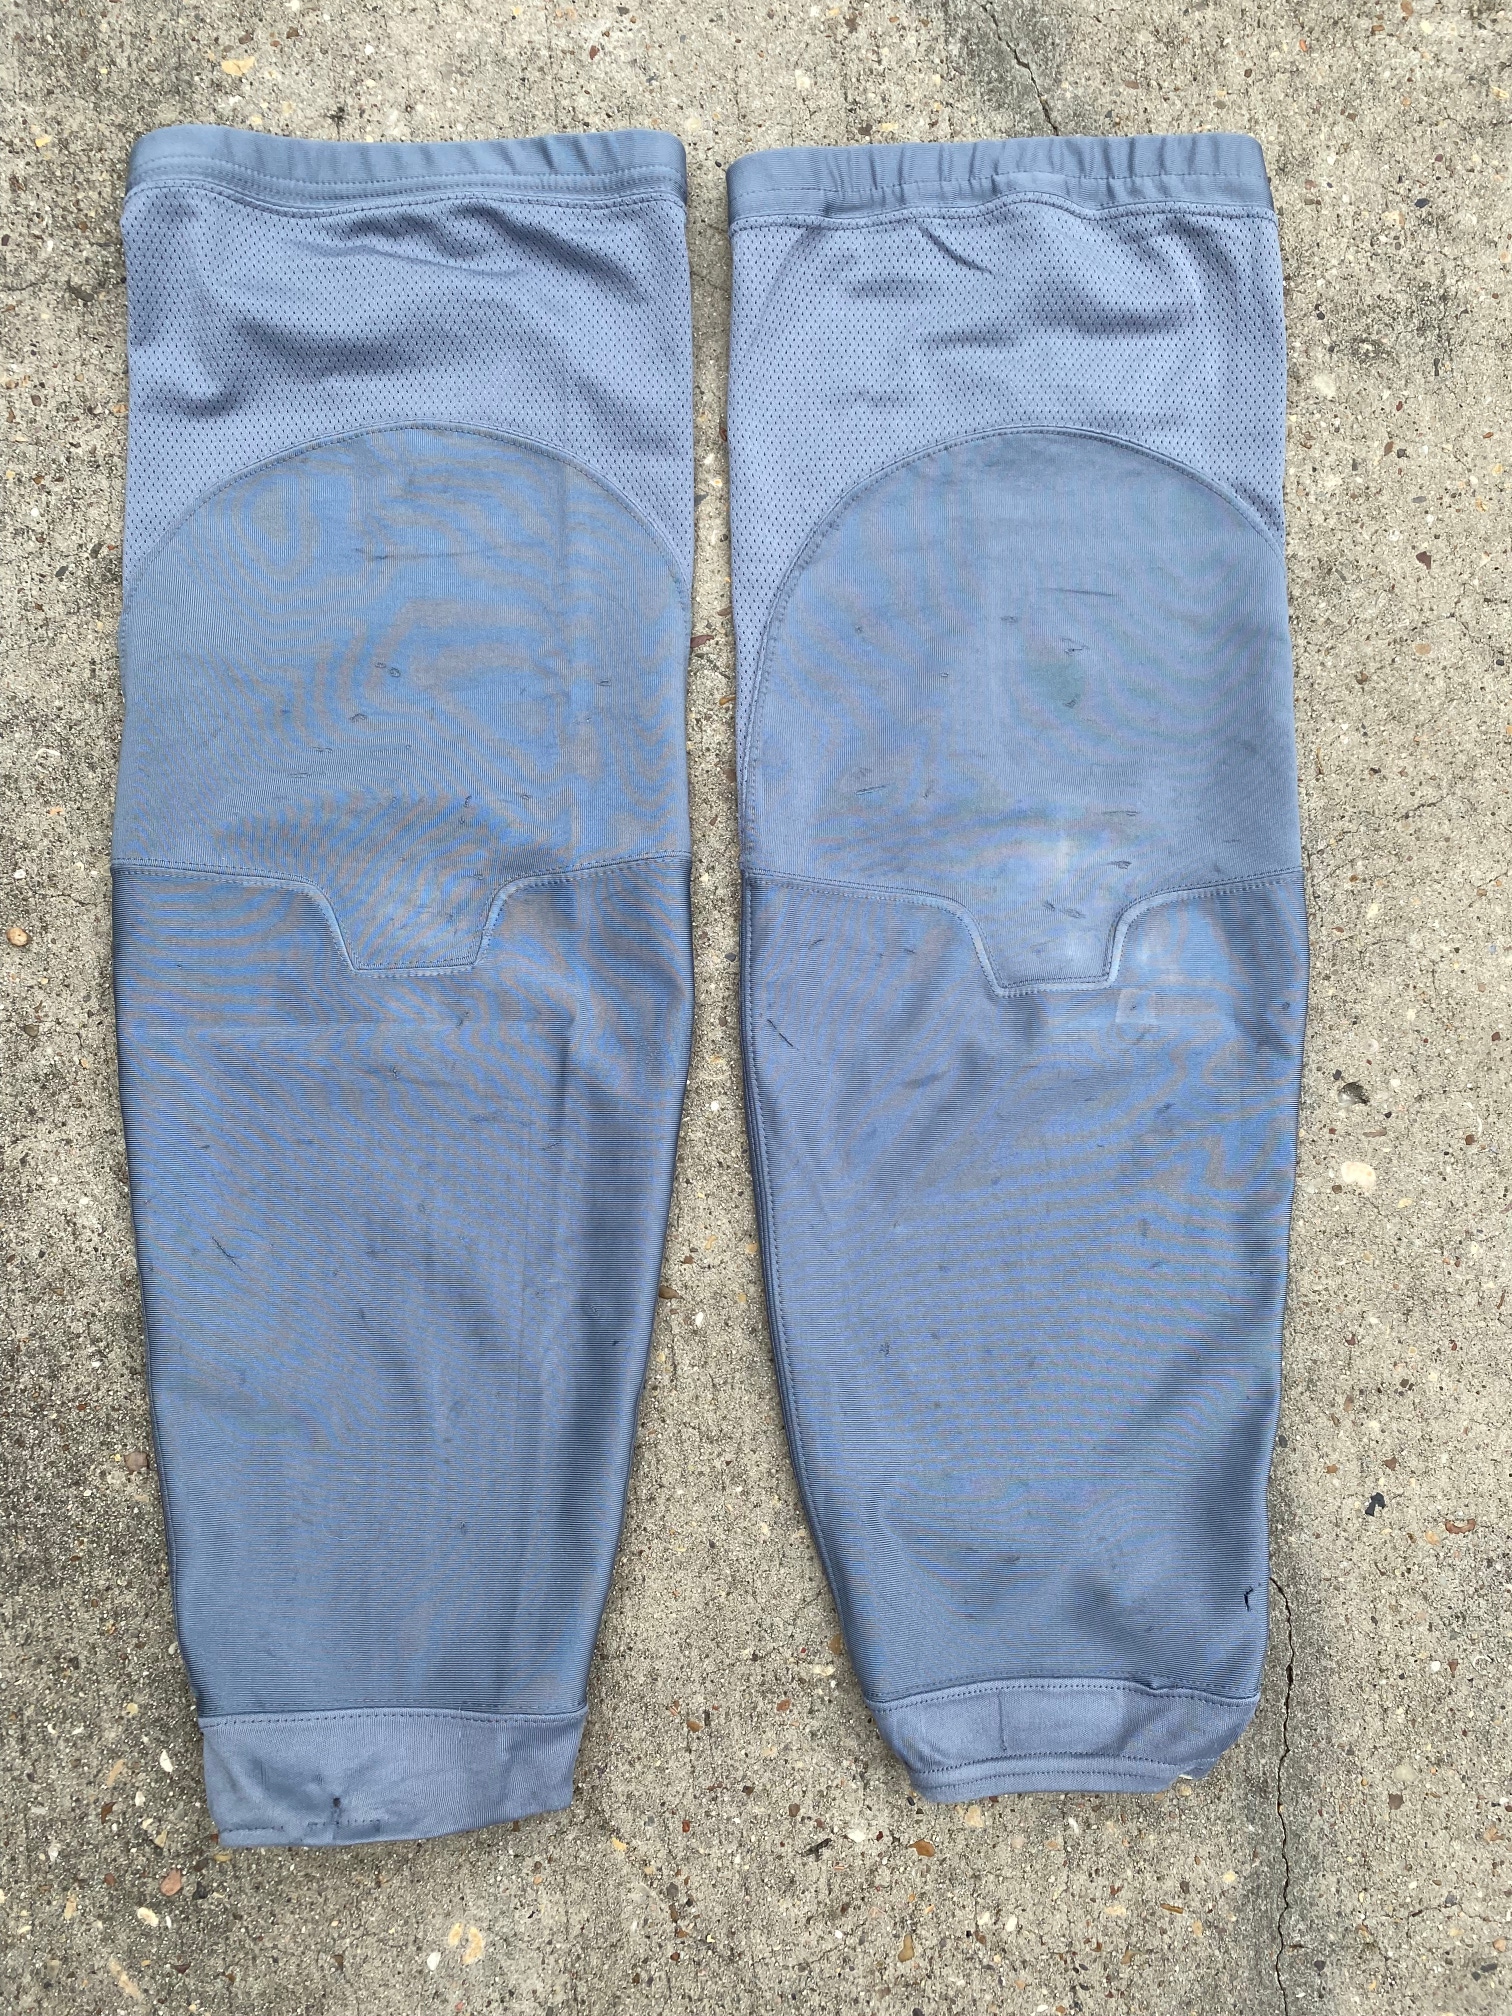 Adidas Edge Pro Stock Hockey Shin Pad Socks Dark Grey KEVLAR 4148